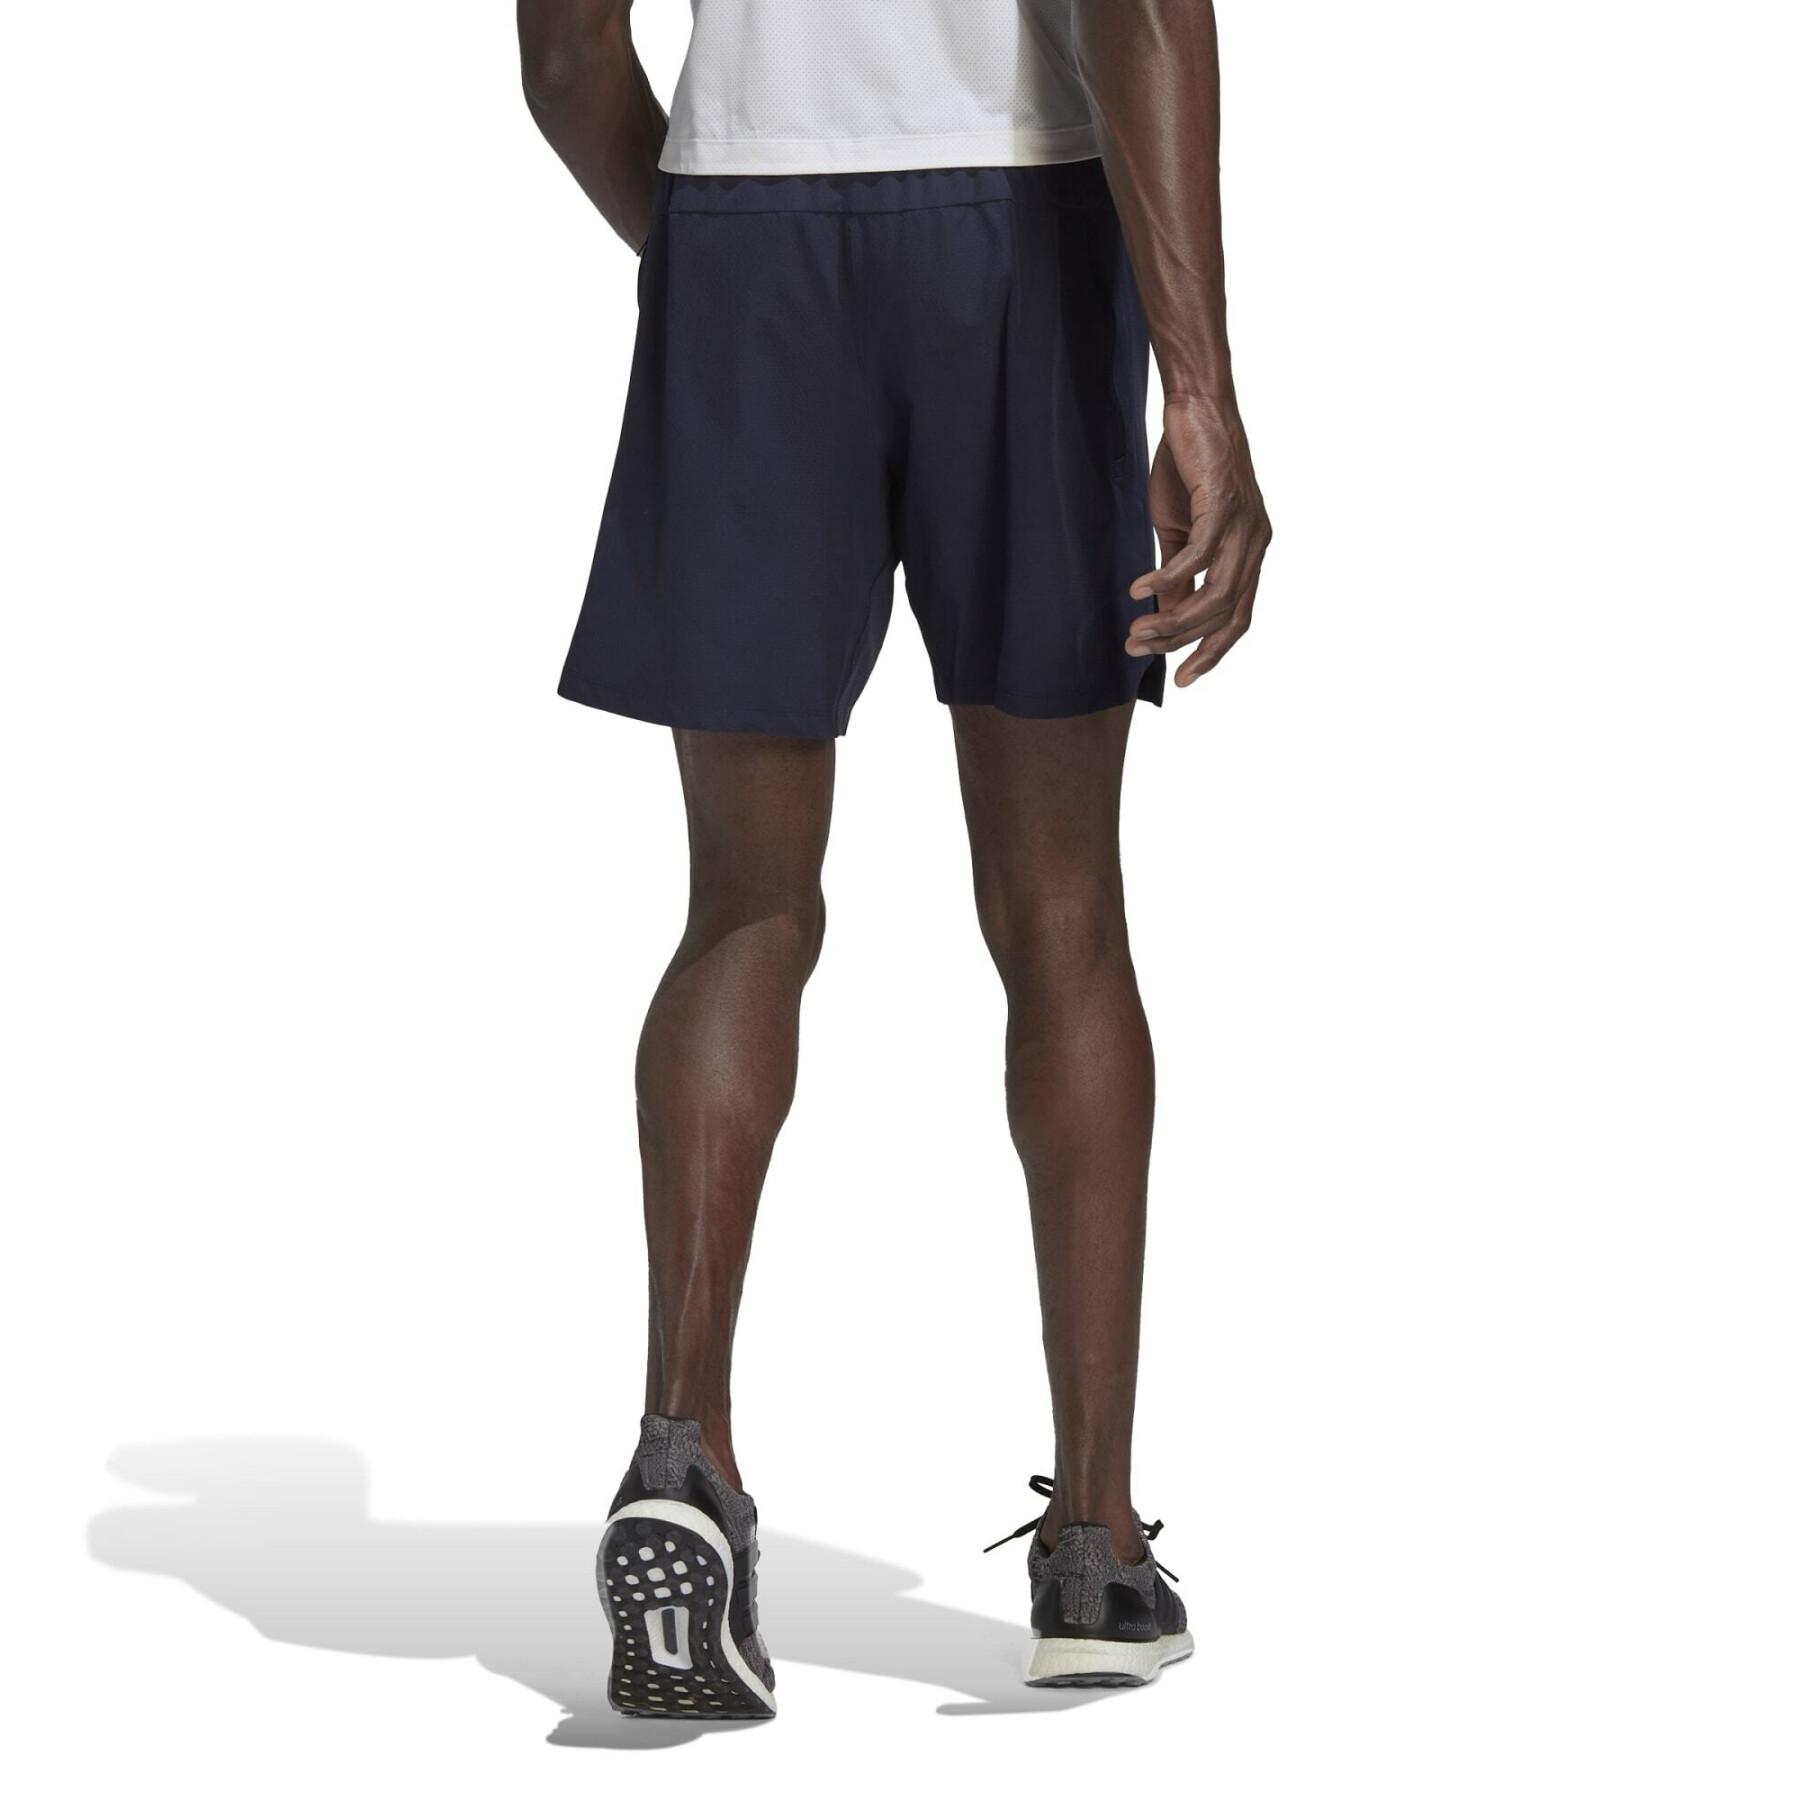 Knurled training shorts adidas